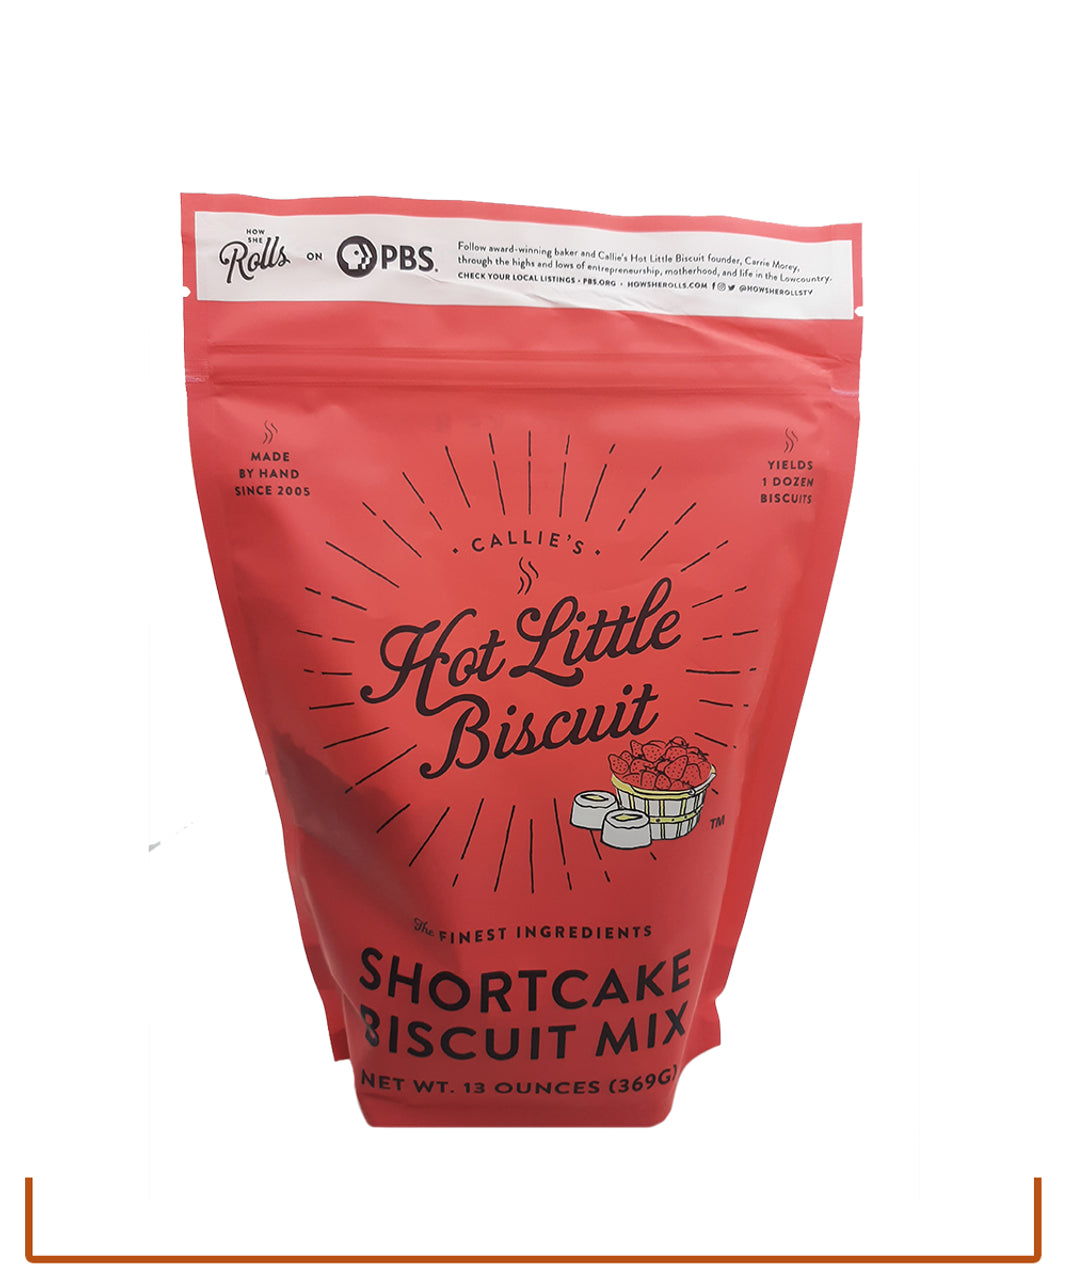 Callie's Shortcake Biscuit Mix